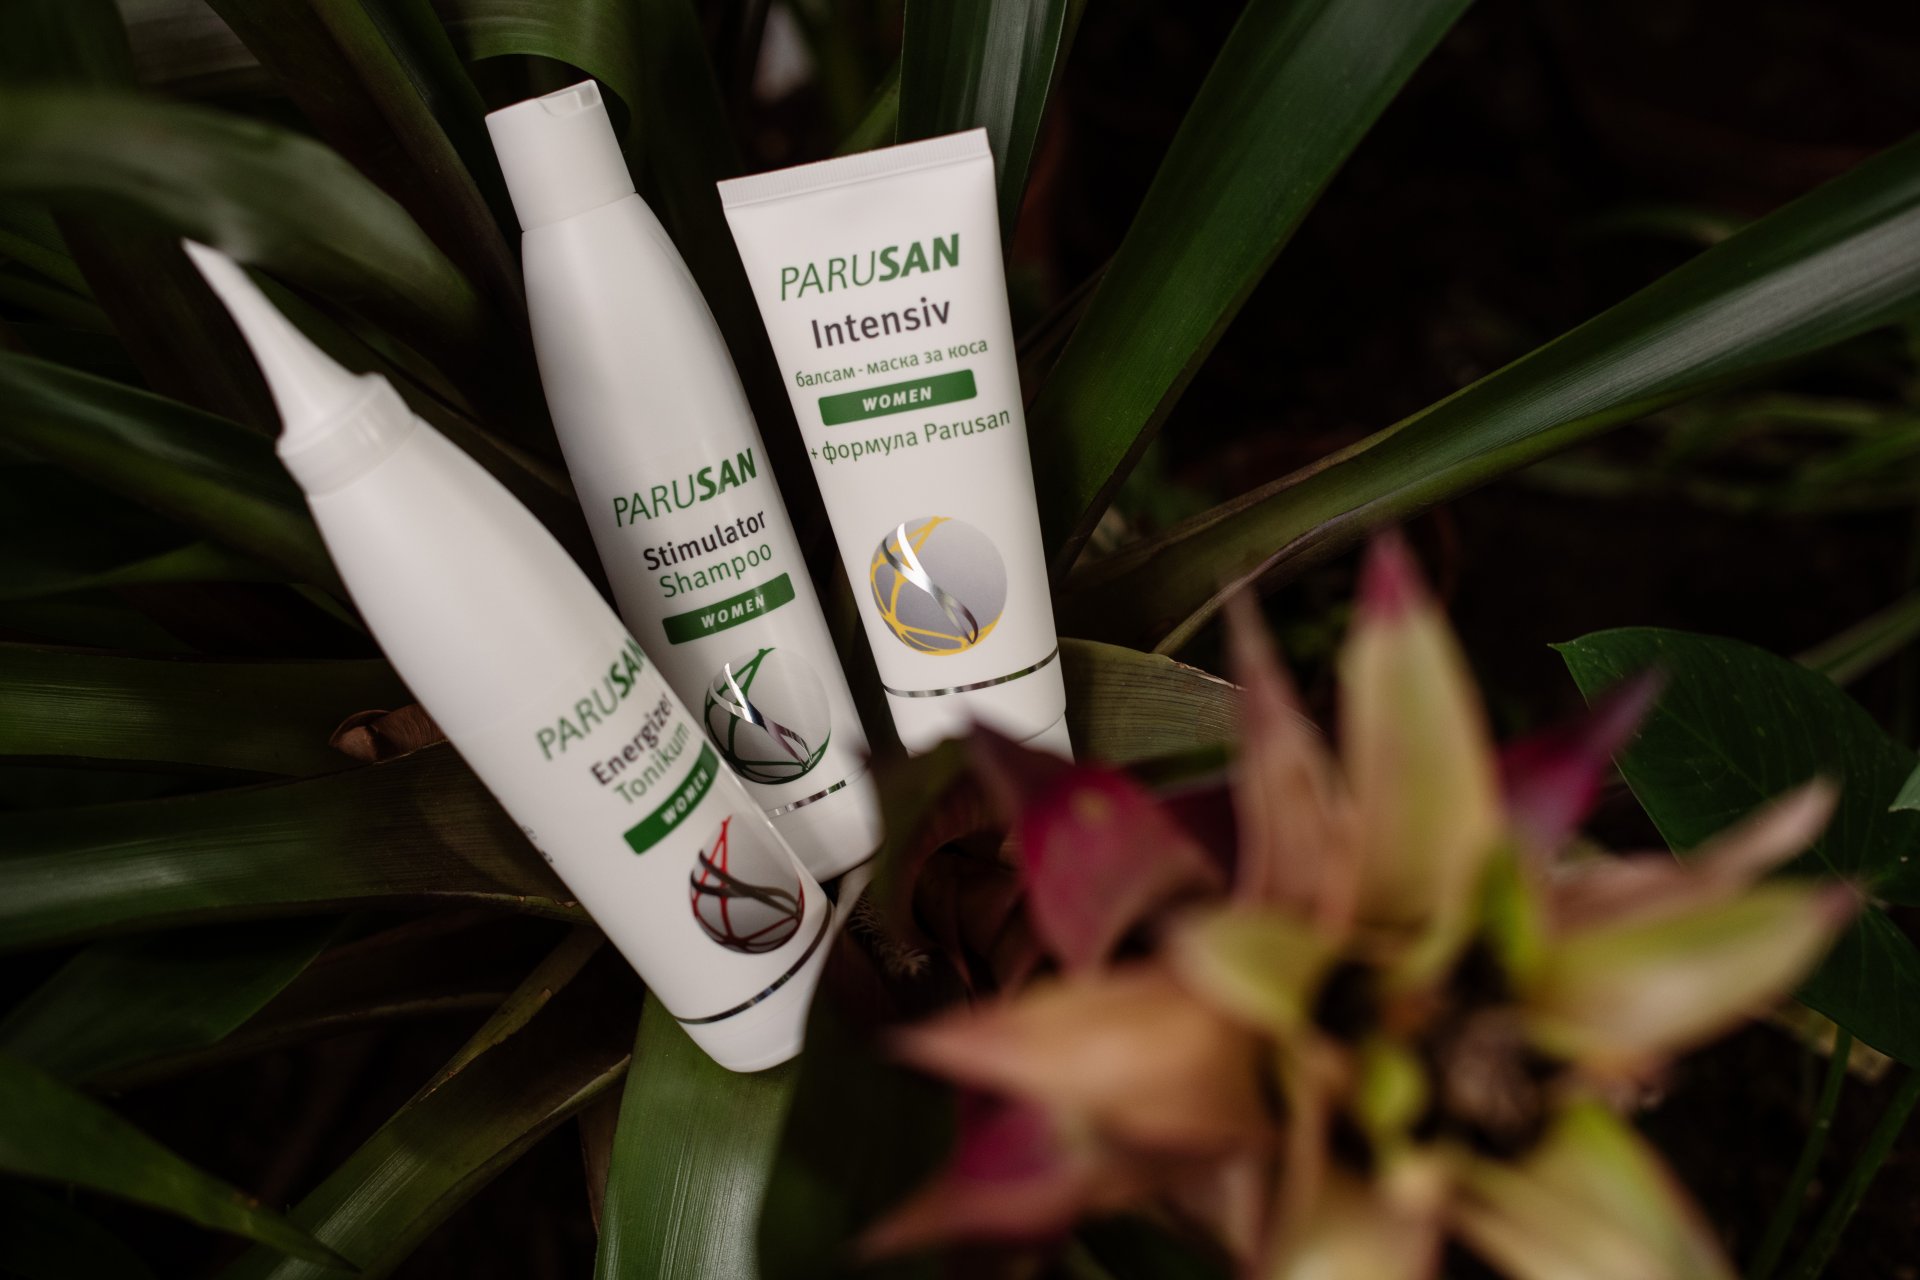 Серията продукти Parusan е създадена така, че да осигури всеобхватна грижа за здравето и красотата на косата, кожата и ноктите, справяйки се ефективно с причинителите на най-честите проблеми при тях.